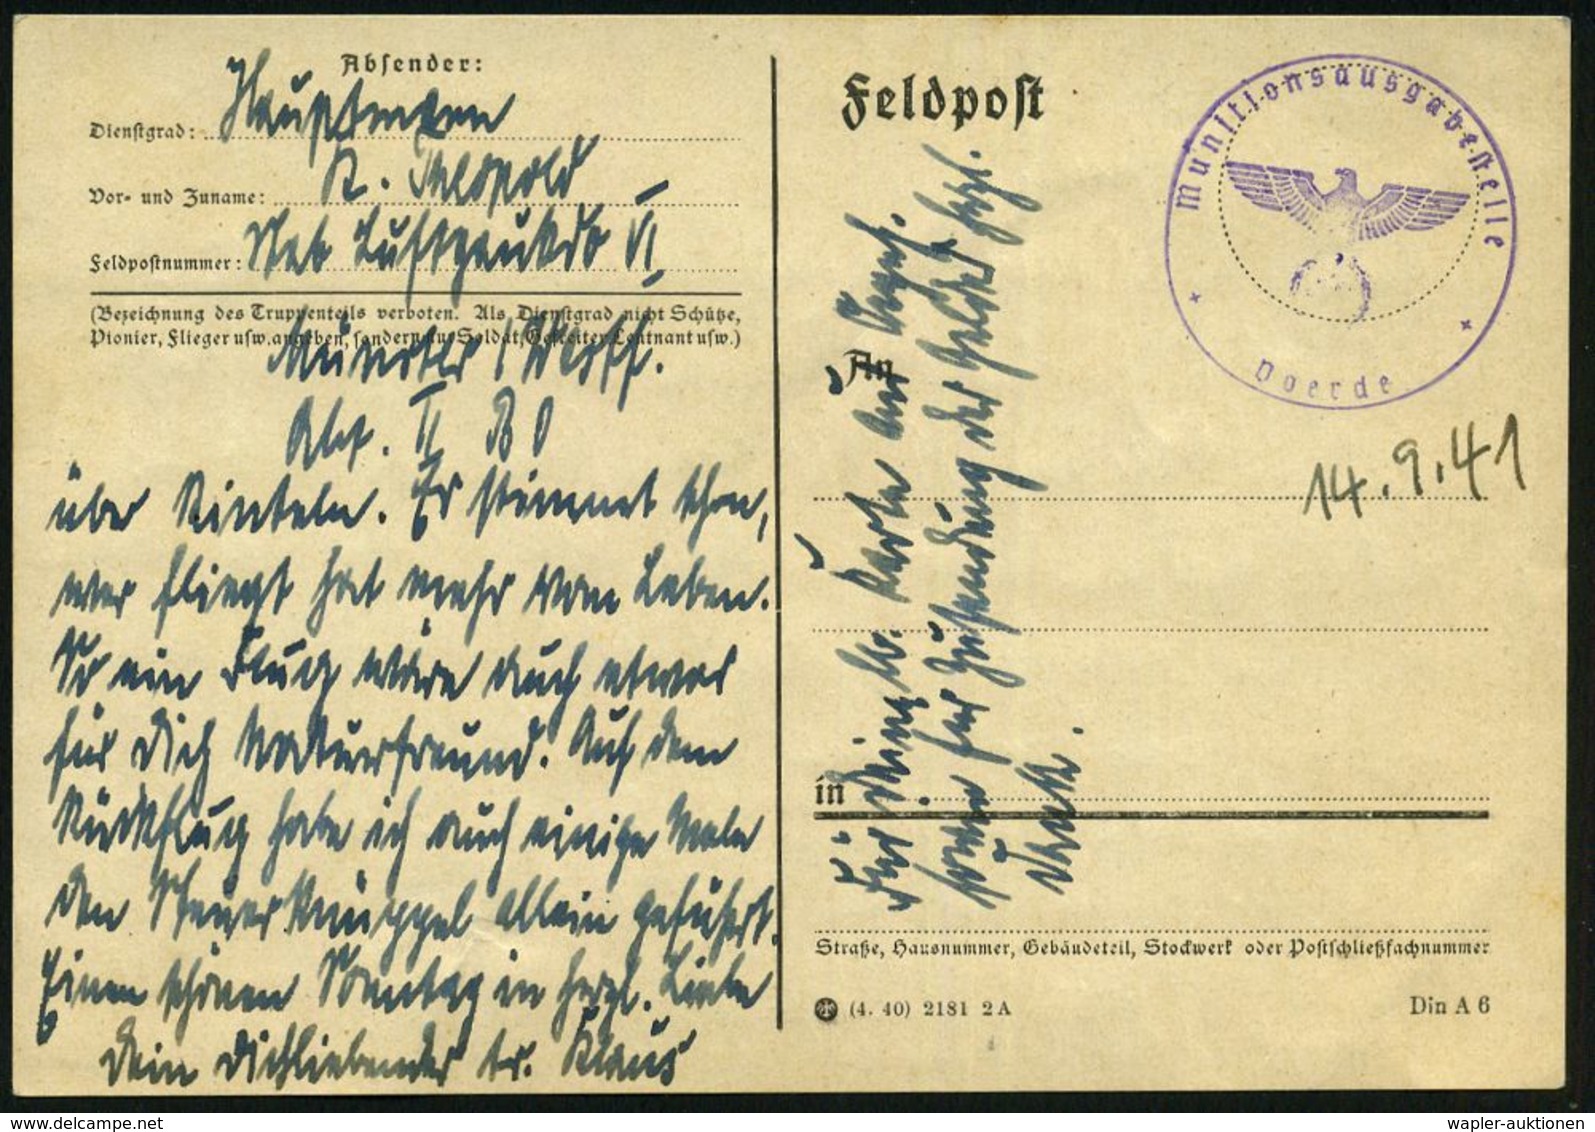 MÜNSTER (WESTF) 2/ Dd/ EIGENE VORSICHT/ BESTER UNFALLSCHUTZ #bzw.# Auf Postsendungen/ Zustell-postamt../ Angeben. 1941/4 - Seconda Guerra Mondiale